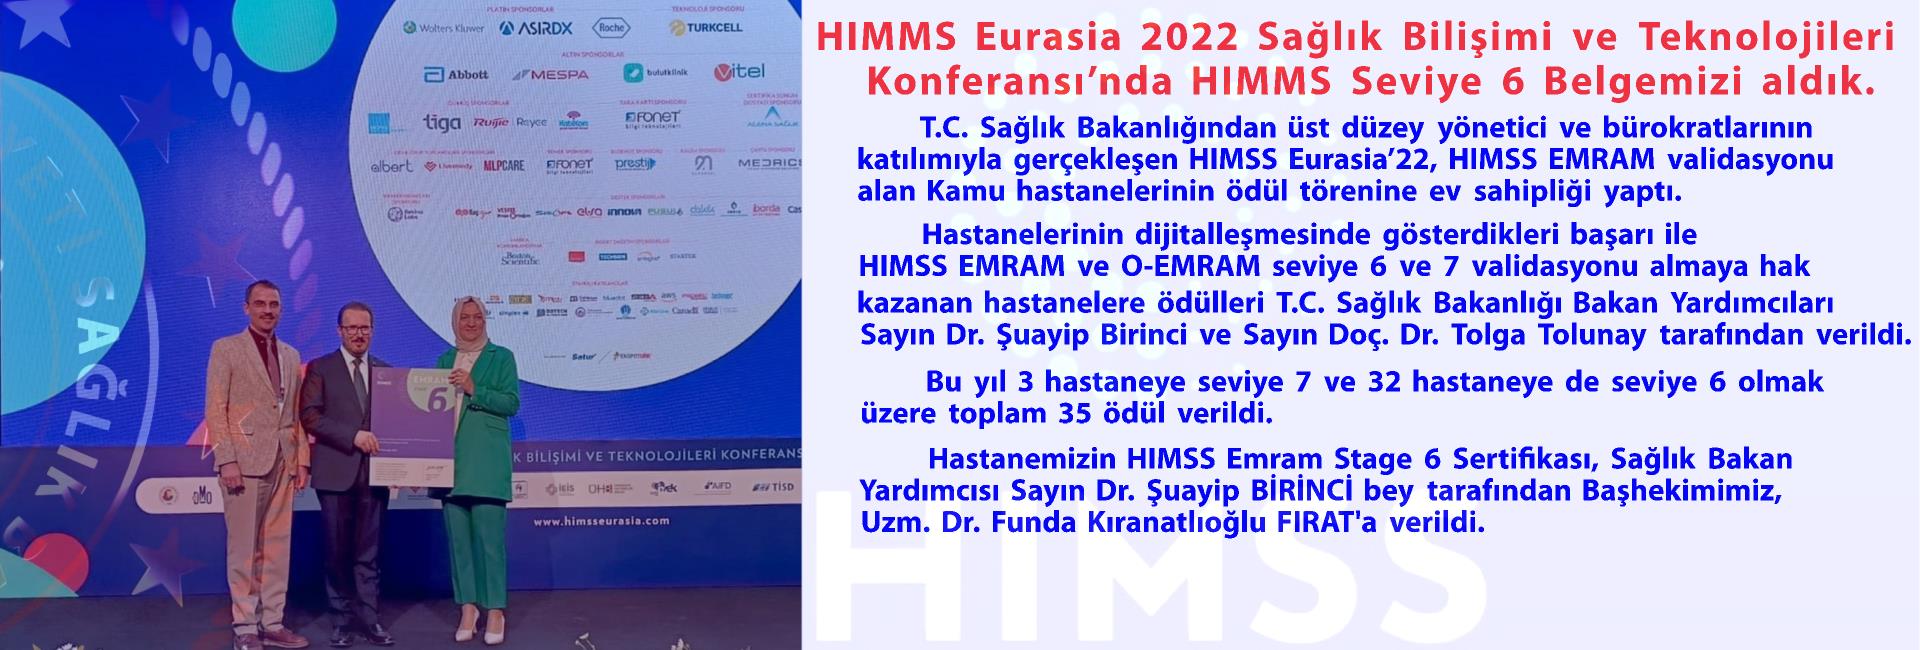 HIMMS Eurasia 2022 Sağlık Bilişimi ve Teknolojileri Konferansı’nda HIMMS Seviye 6 Belgemizi aldık.